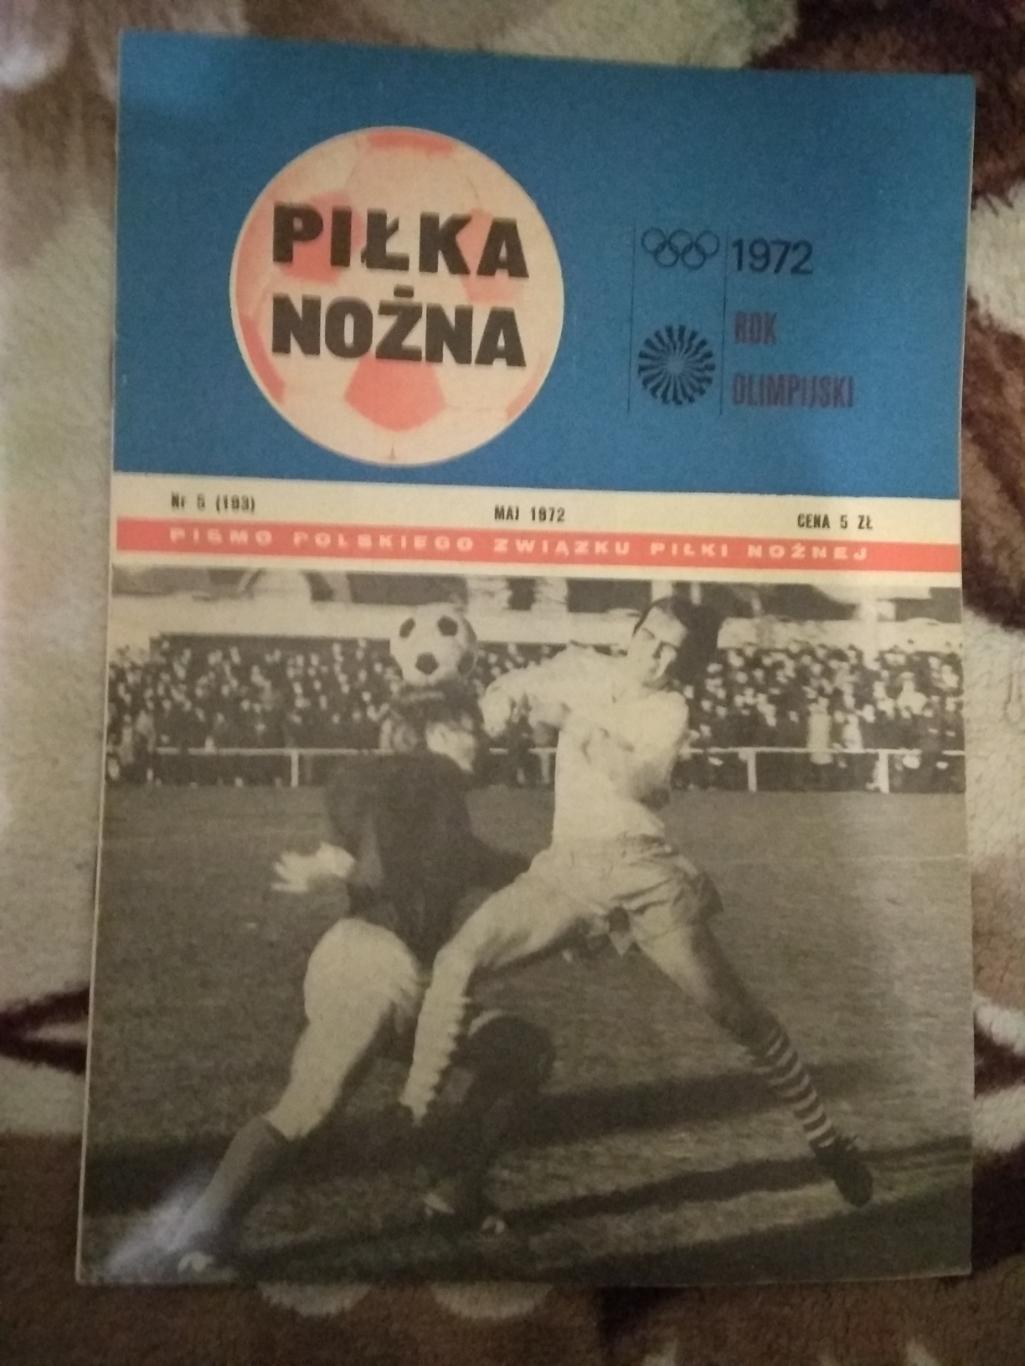 Газета.Футбол.Пилка ножна № 5 1972 г. (Польша).